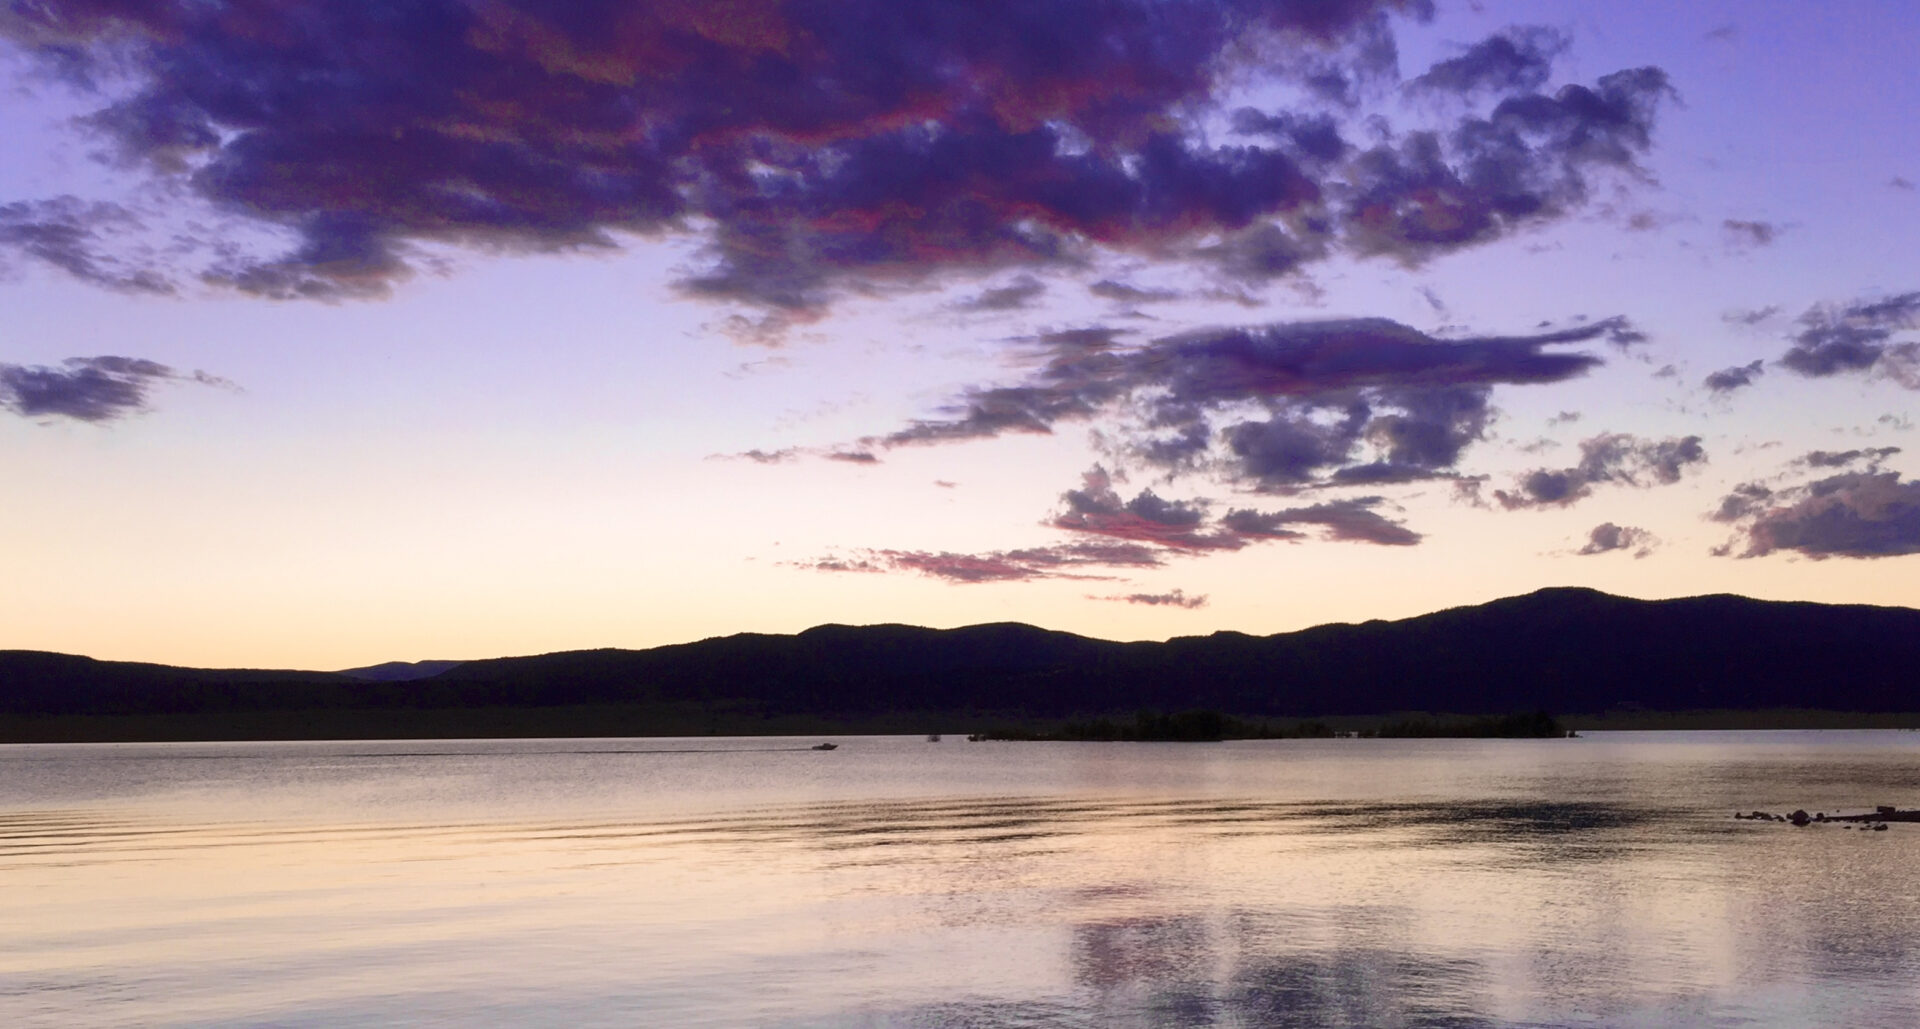 Sunset at Storrie Lake